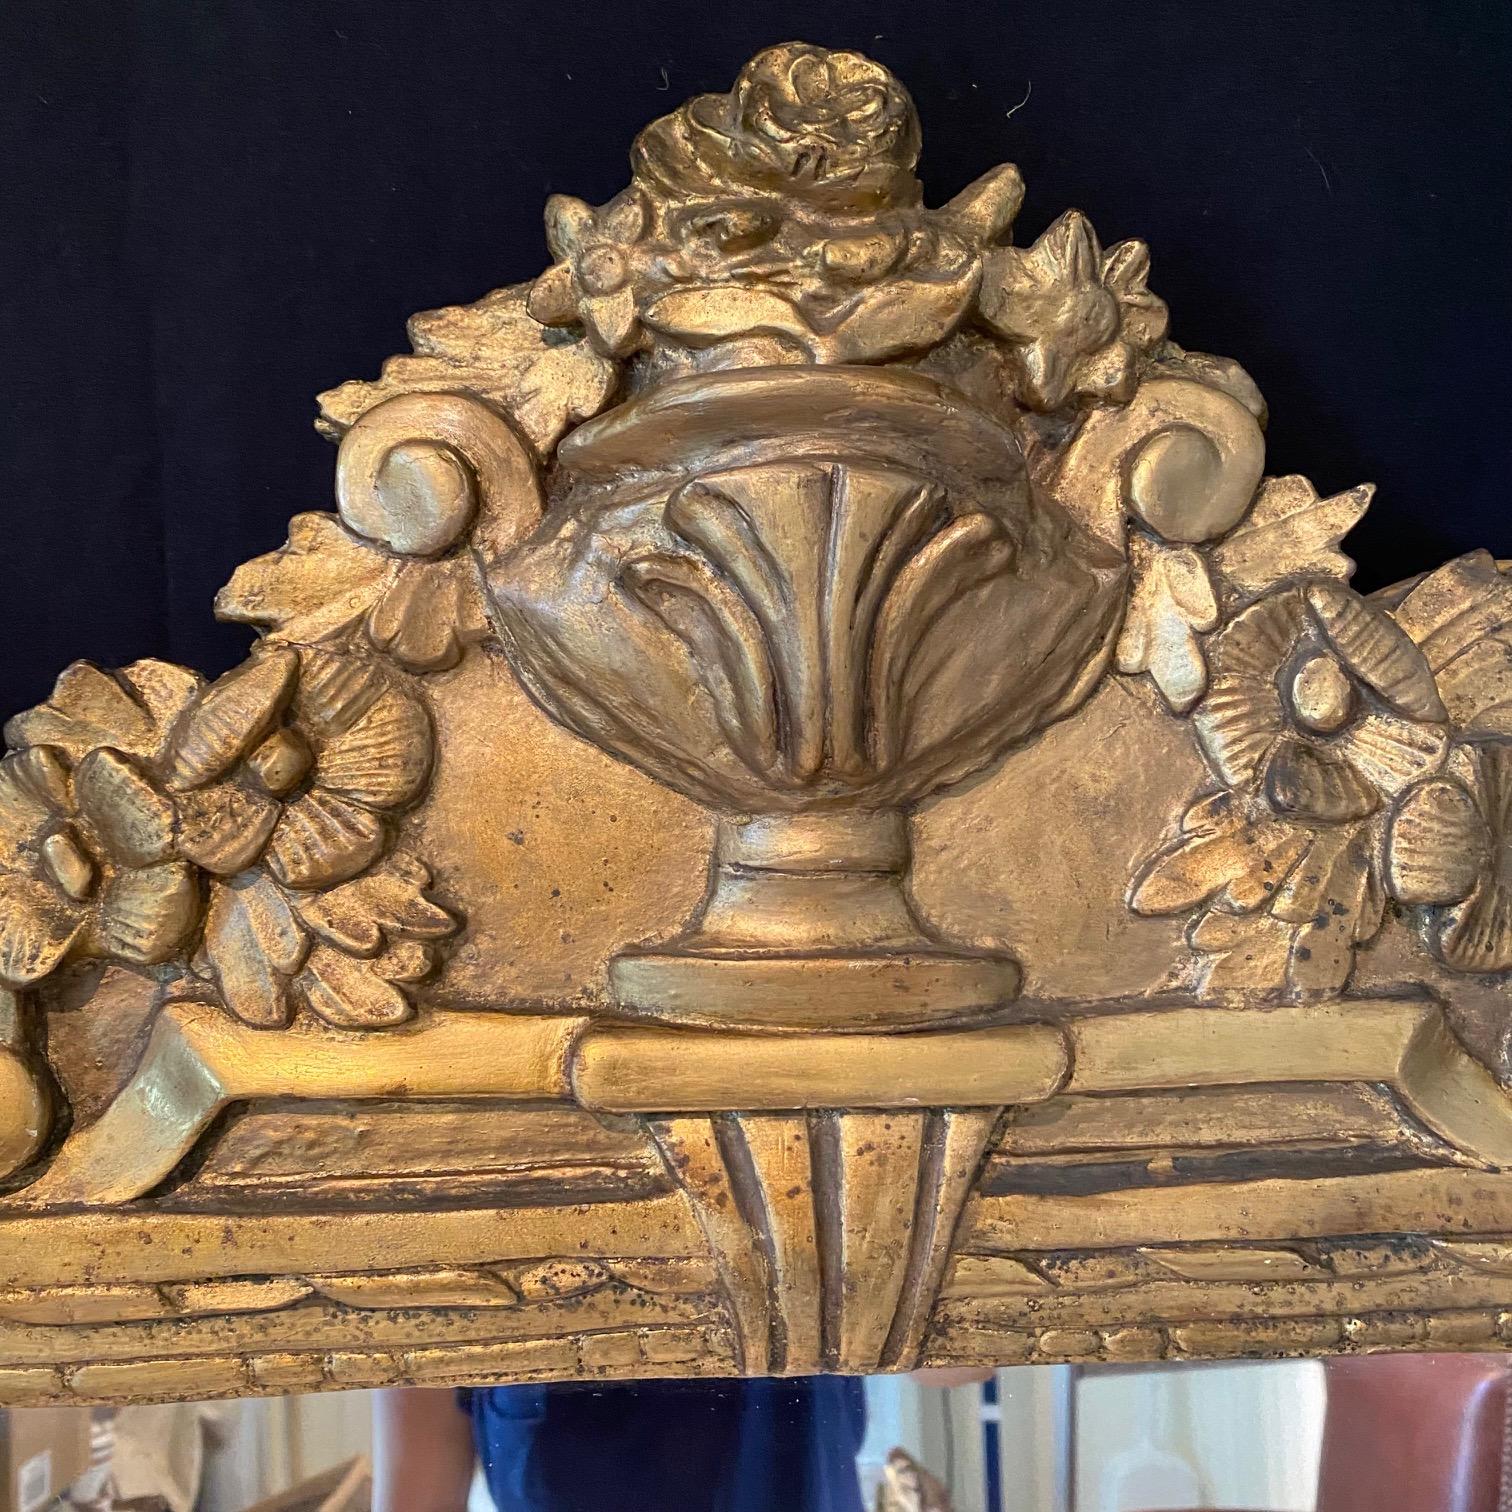 Spiegel aus Frankreich aus der Zeit Ludwigs XVI. Dieses Stück ist aus handgeschnitztem Holz mit Stuck und einer Front mit einer Urne und schönen Blumenmotiven gefertigt.

#6462